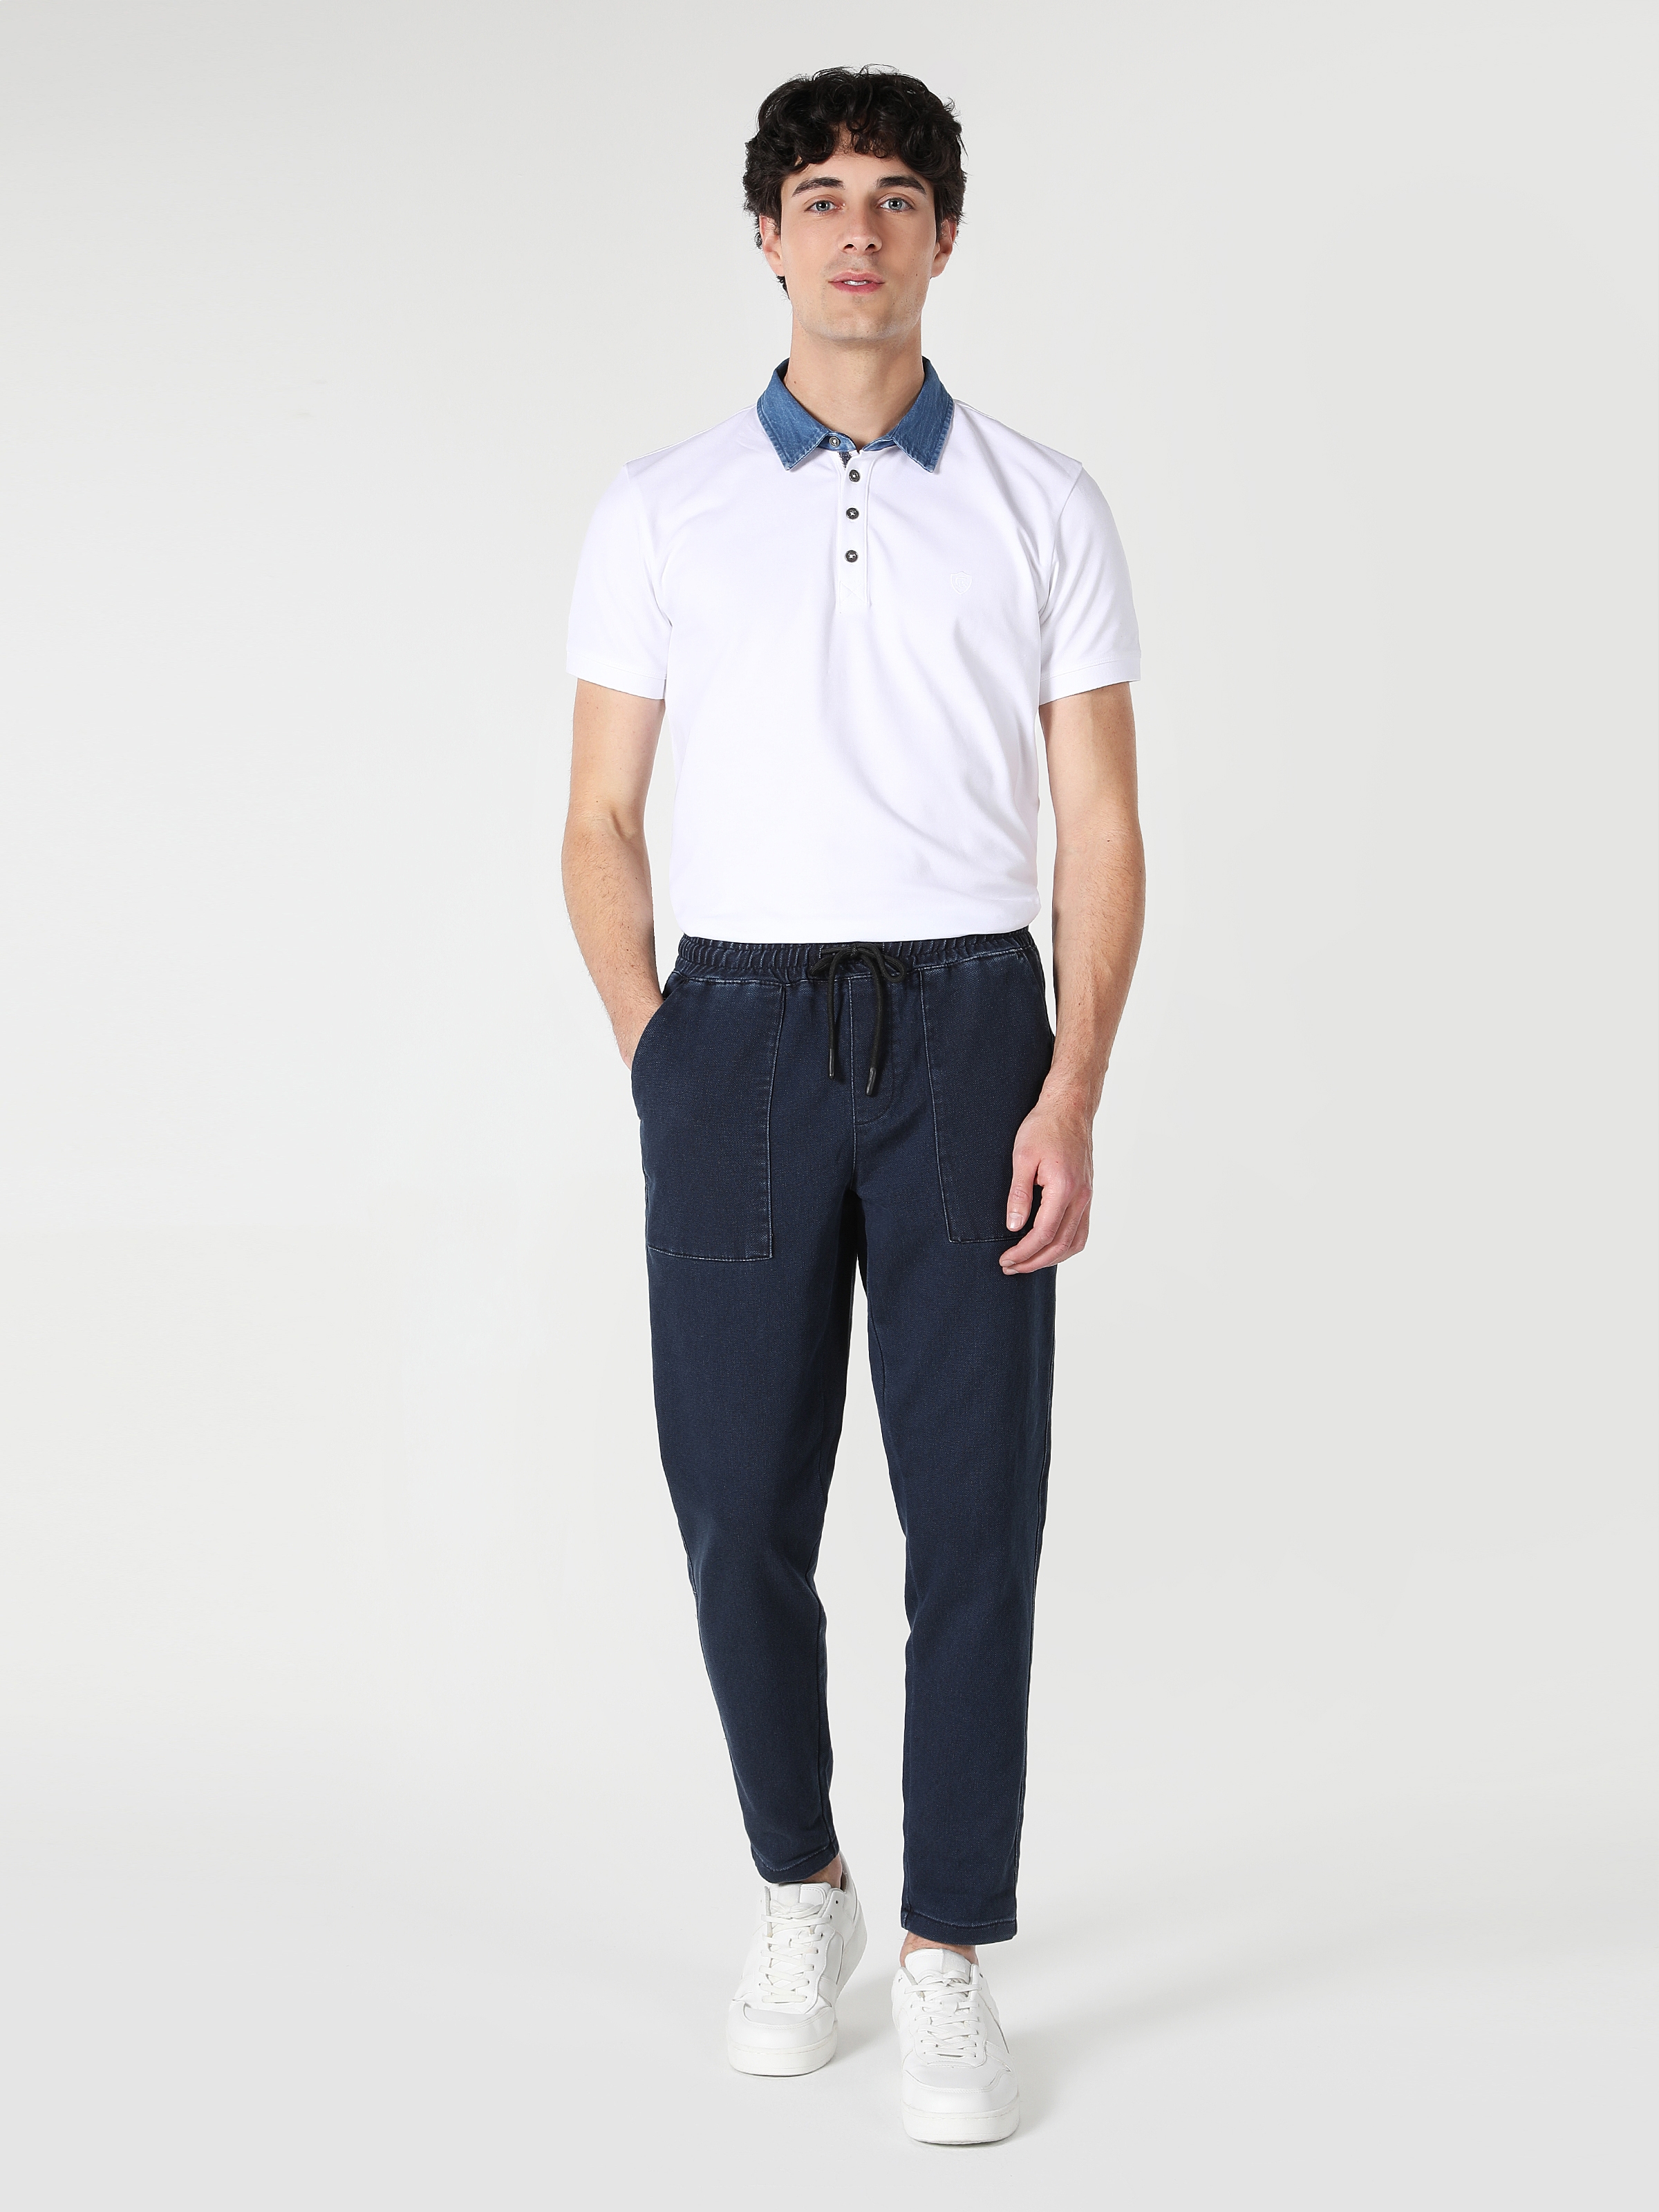 Afficher les détails de Pantalon Homme Bleu Marine Taille Moyenne Coupe Slim Coupe Droite